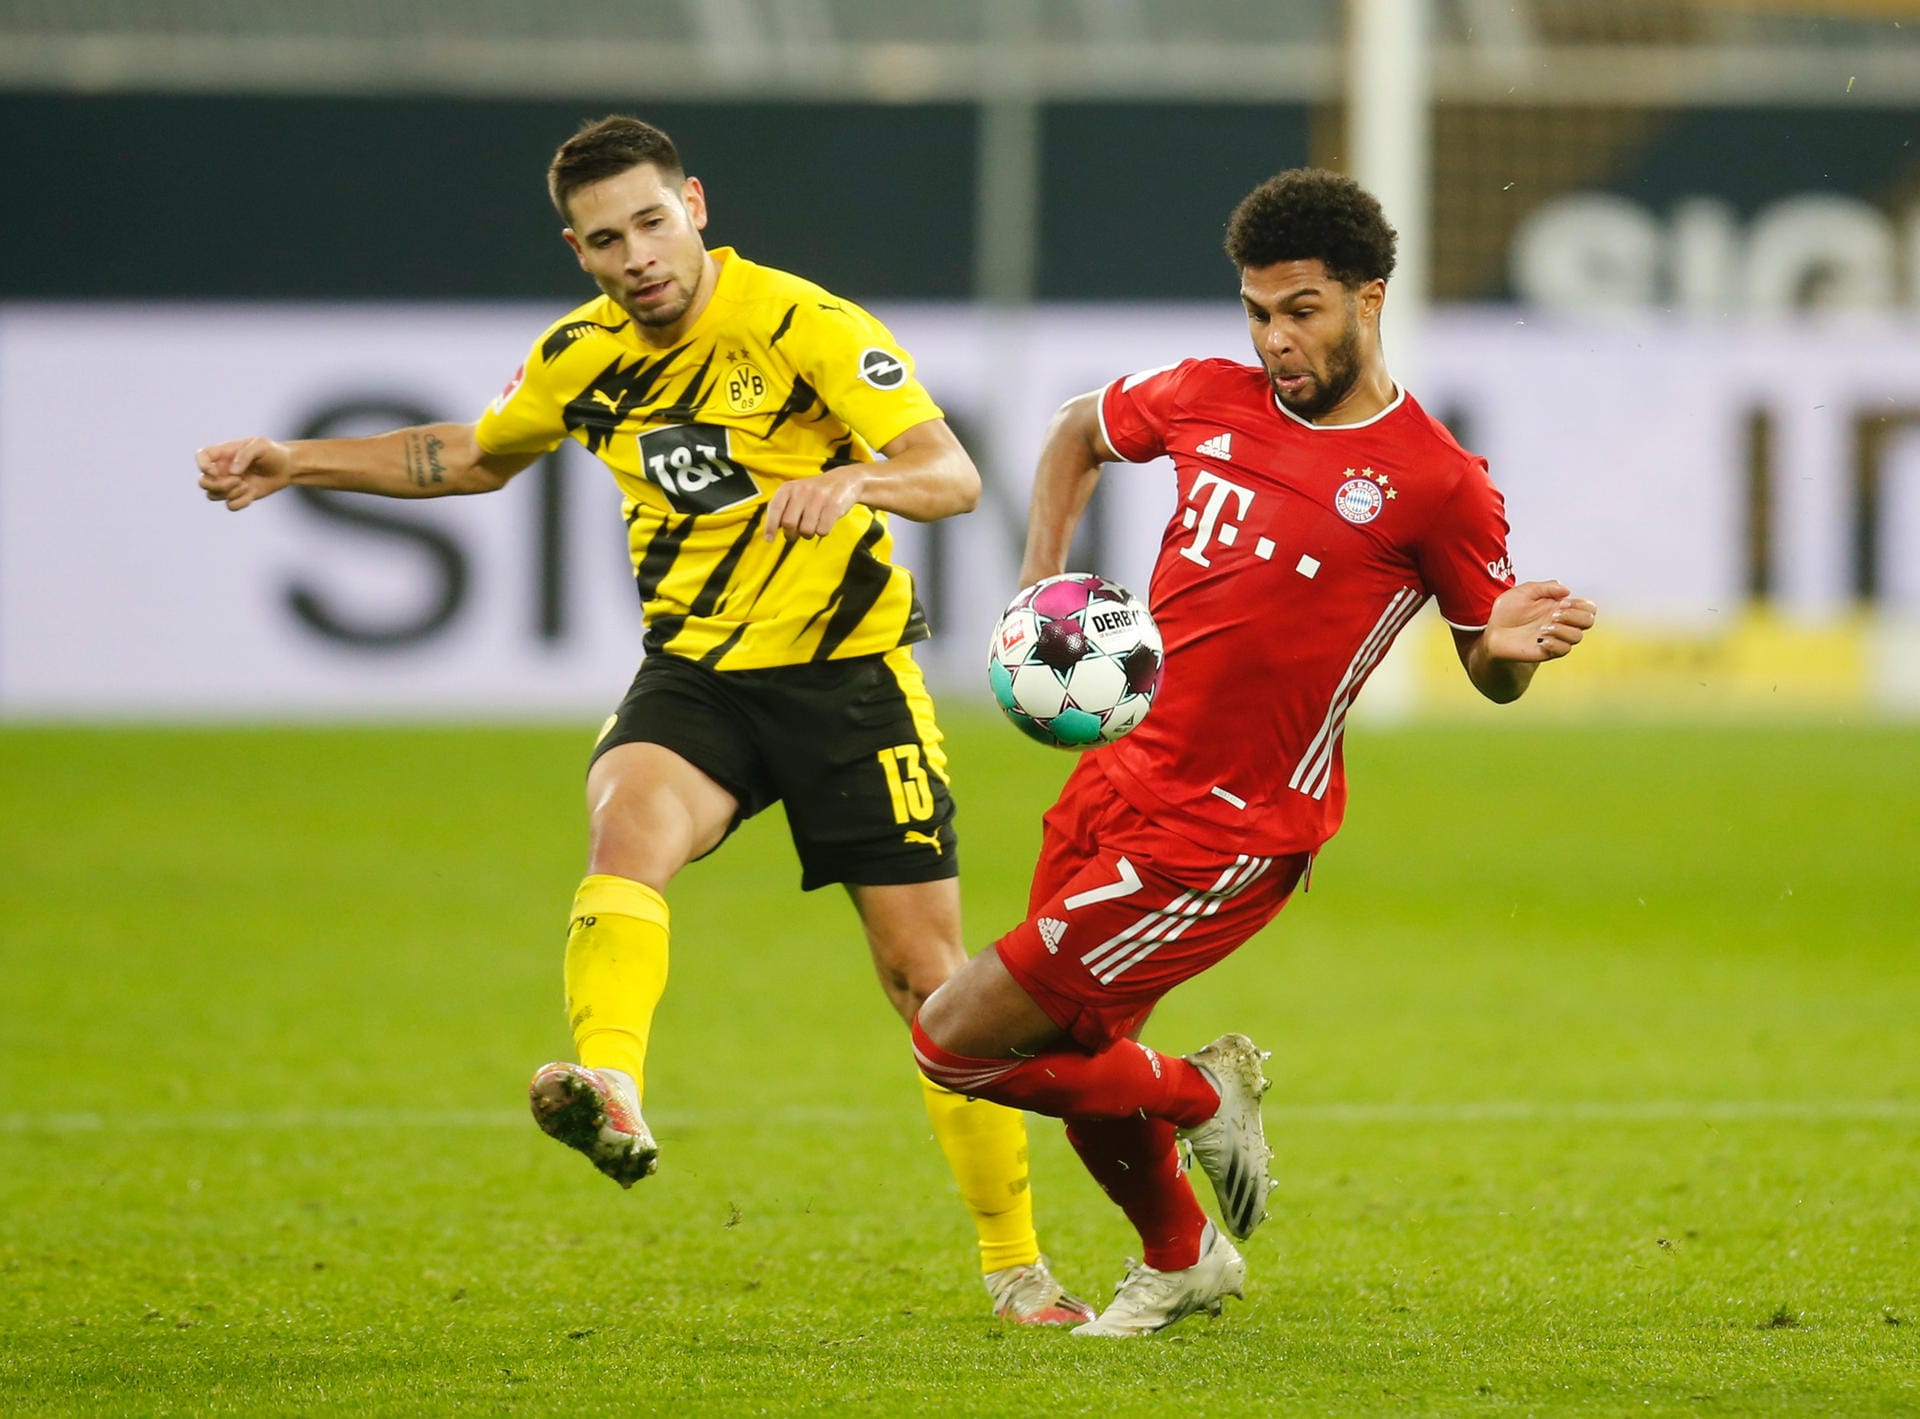 Raphael Guerreiro: Dortmunds Linksverteidiger war mit Abstand der beste Spieler der Viererkette. In der Schlussphase schaltete er noch einen Gang hoch und wurde zum Spielmacher des Teams. Note: 1